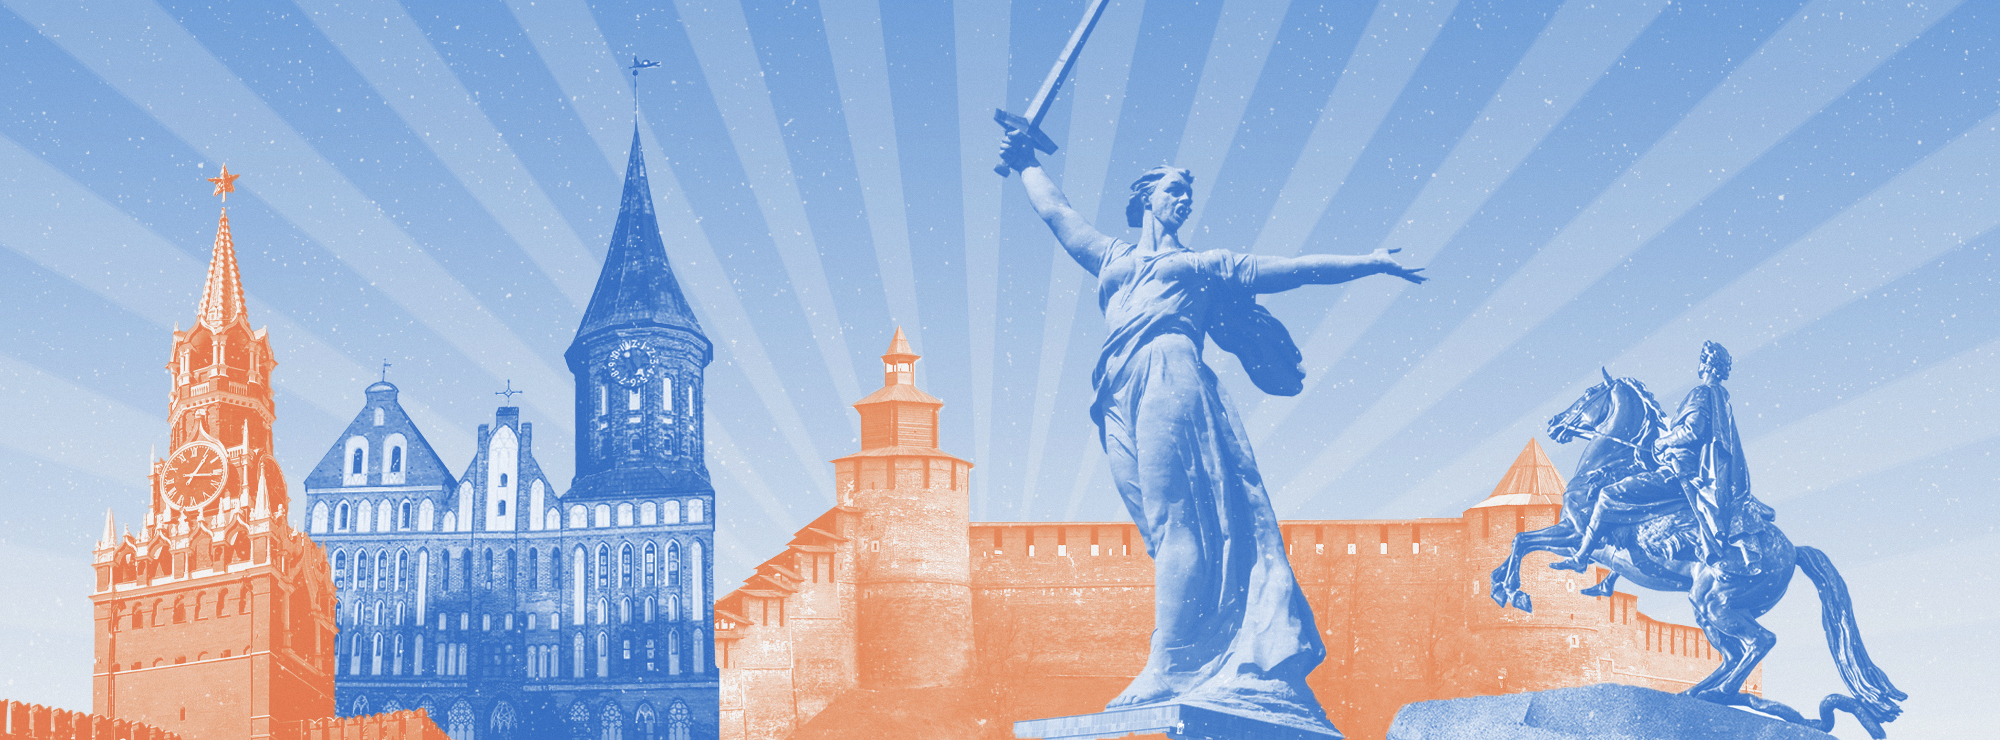 Полноразмерная обложка поста на тему: 35 самых красивых городов России для путешествий